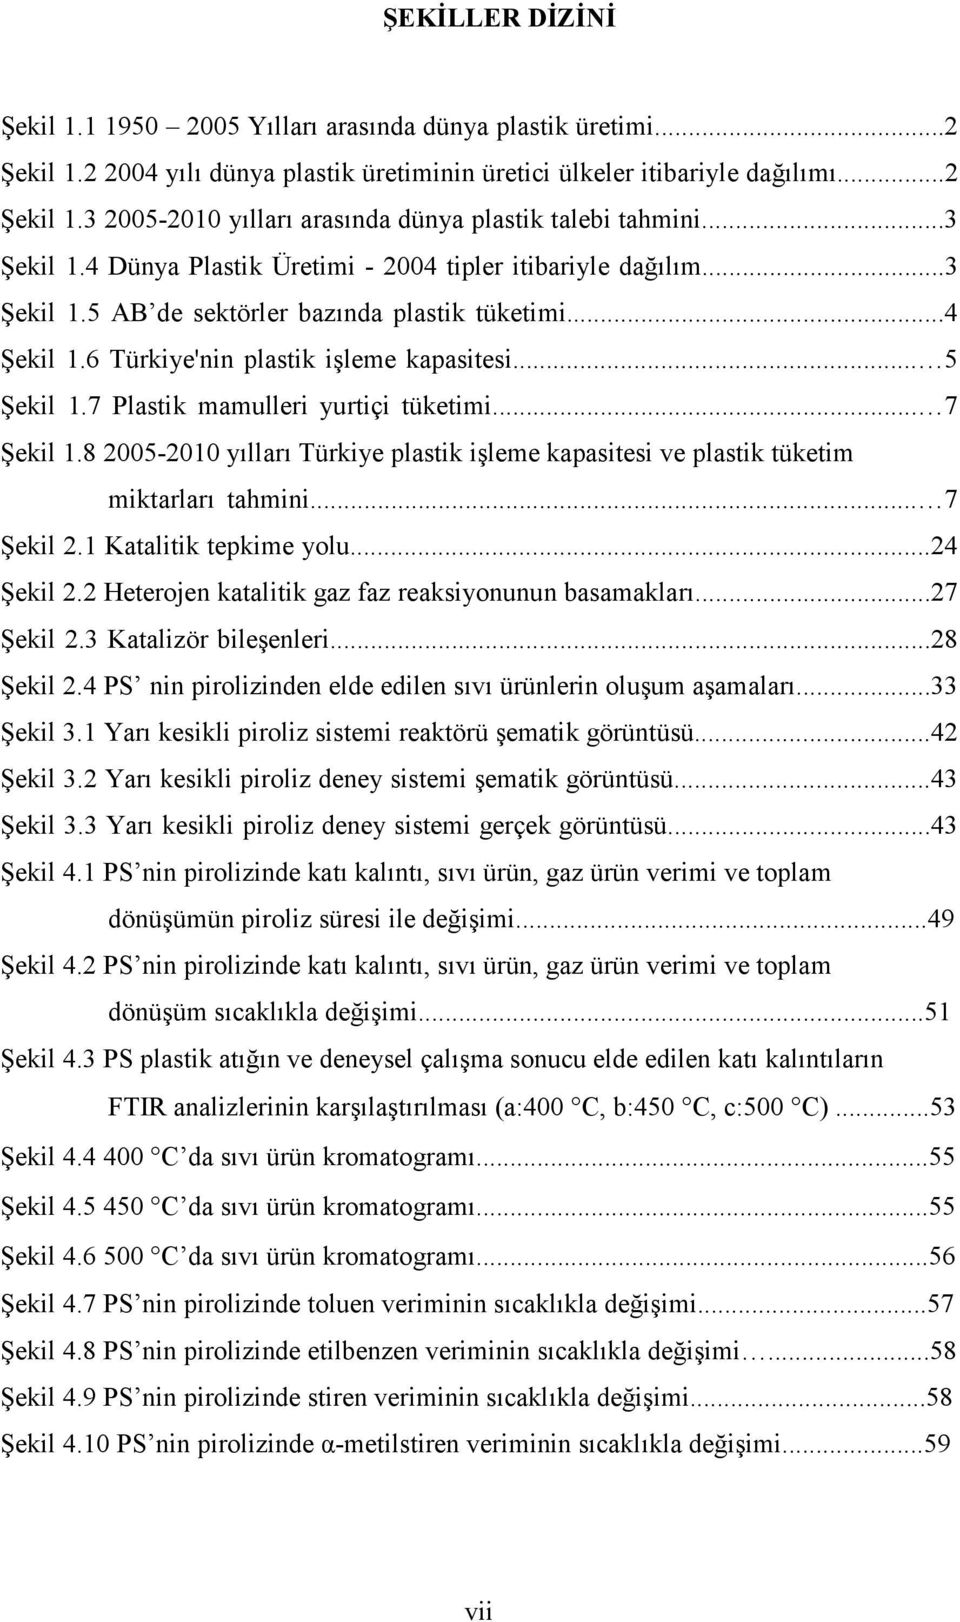 7 Plastik mamulleri yurtiçi tüketimi... 7 Şekil 1.8 2005-2010 yılları Türkiye plastik işleme kapasitesi ve plastik tüketim miktarları tahmini... 7 Şekil 2.1 Katalitik tepkime yolu...24 Şekil 2.